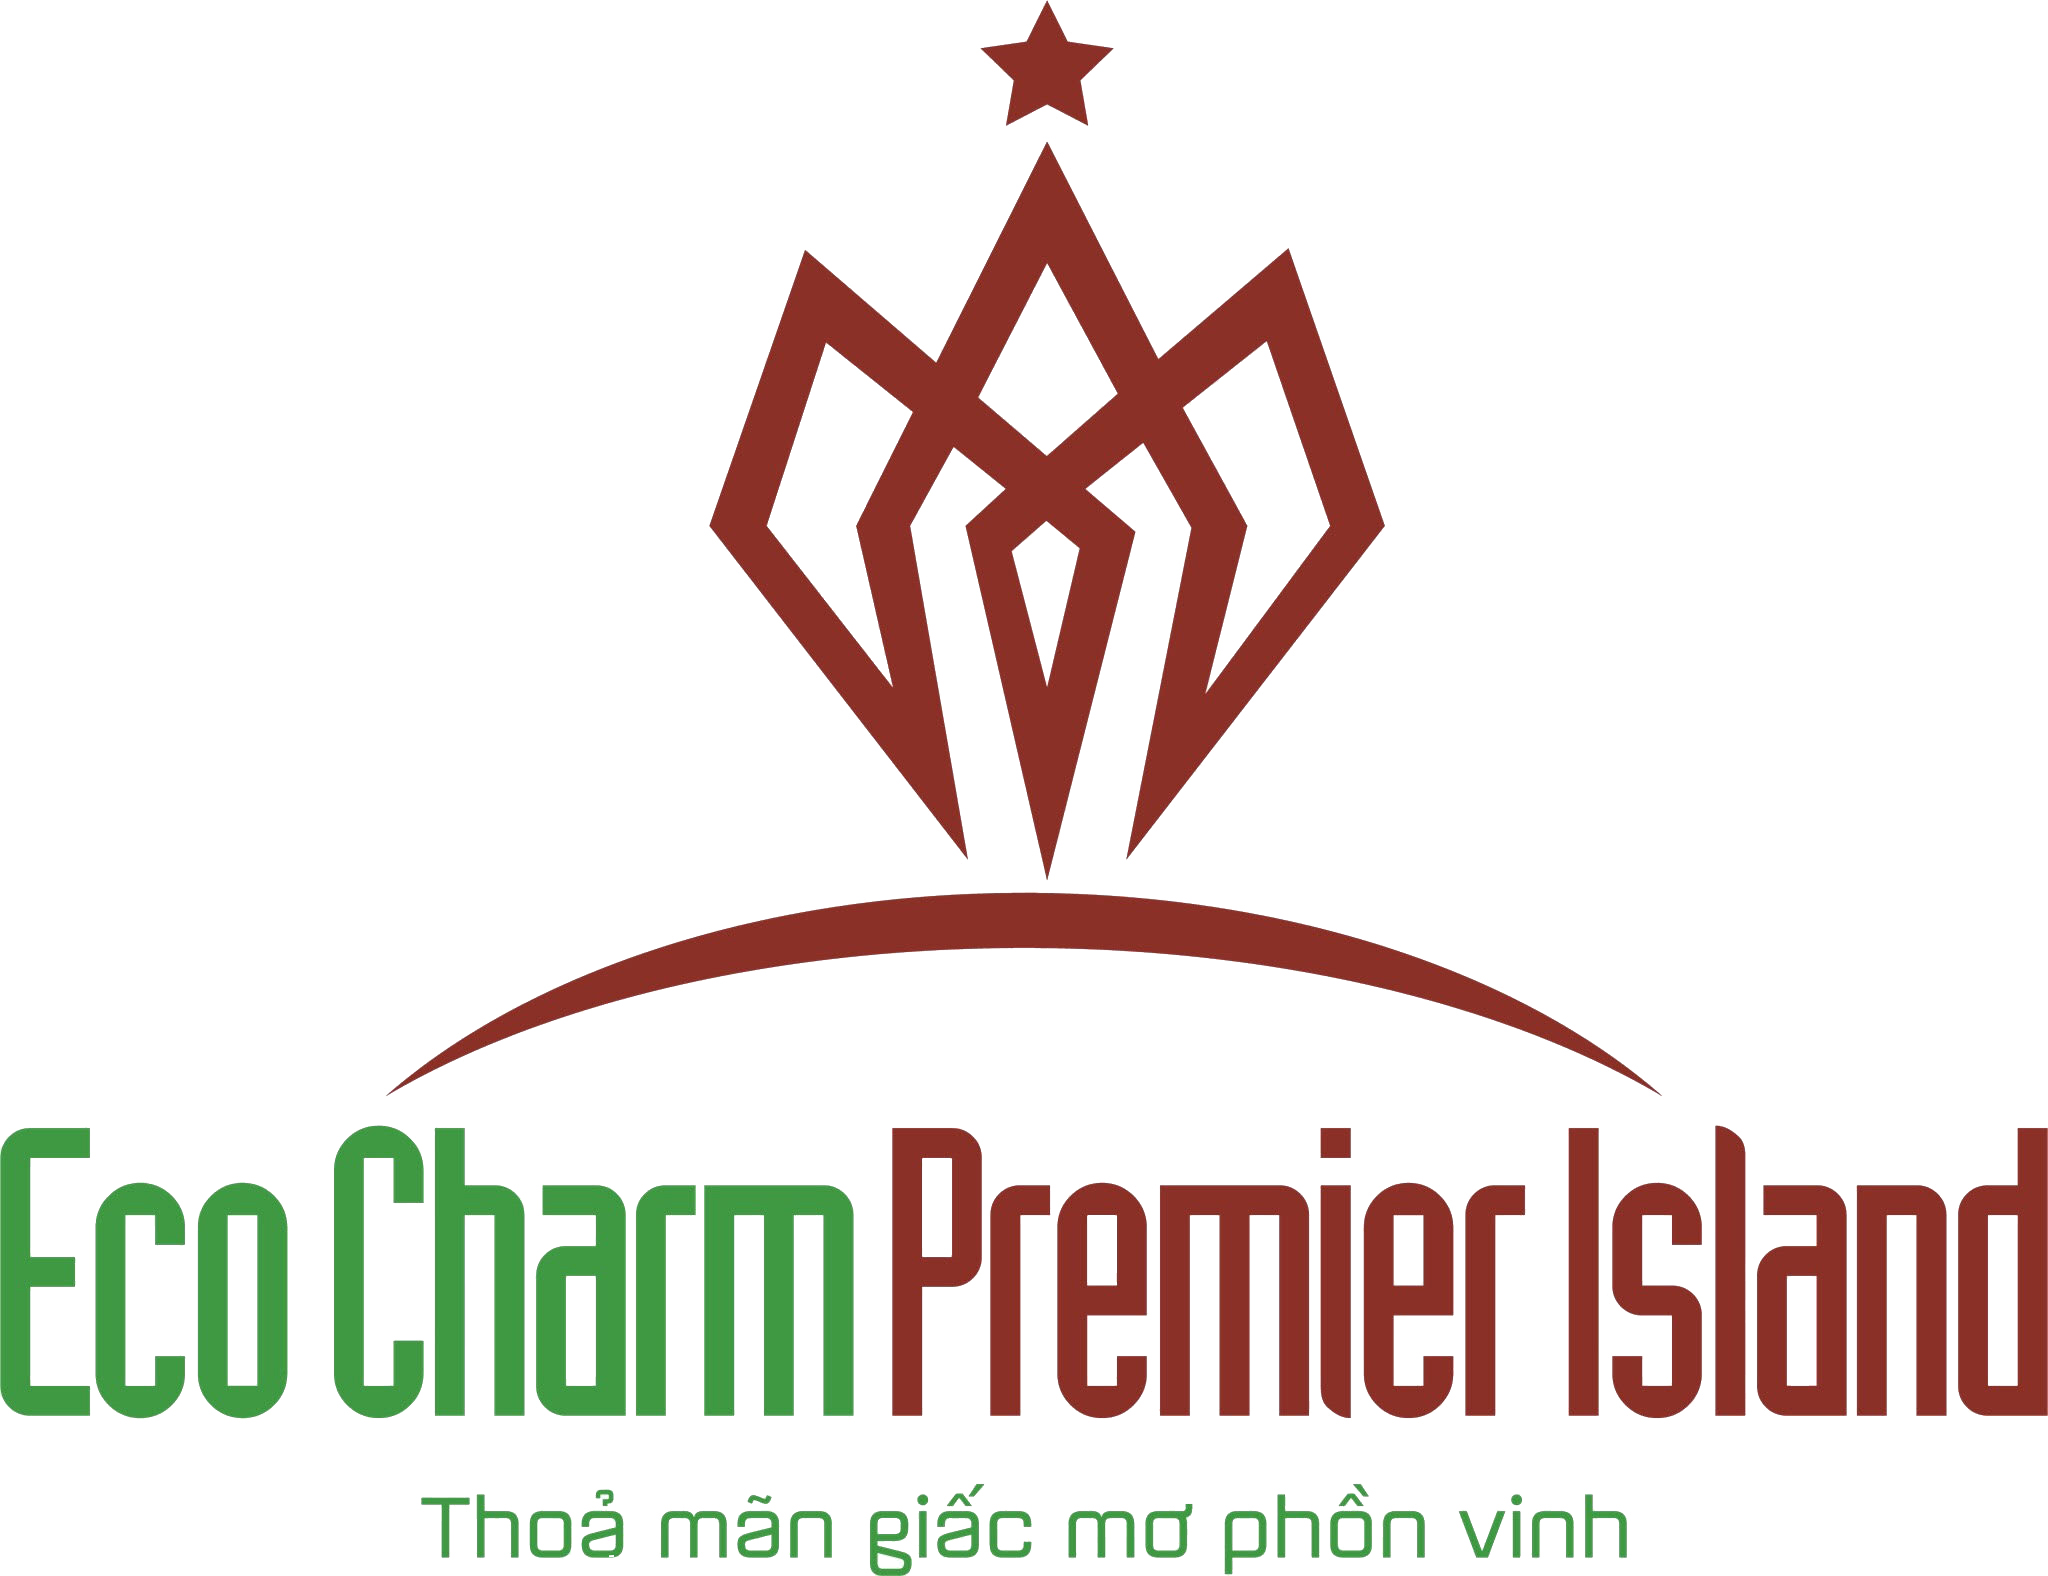 Ecocharm Premier Island